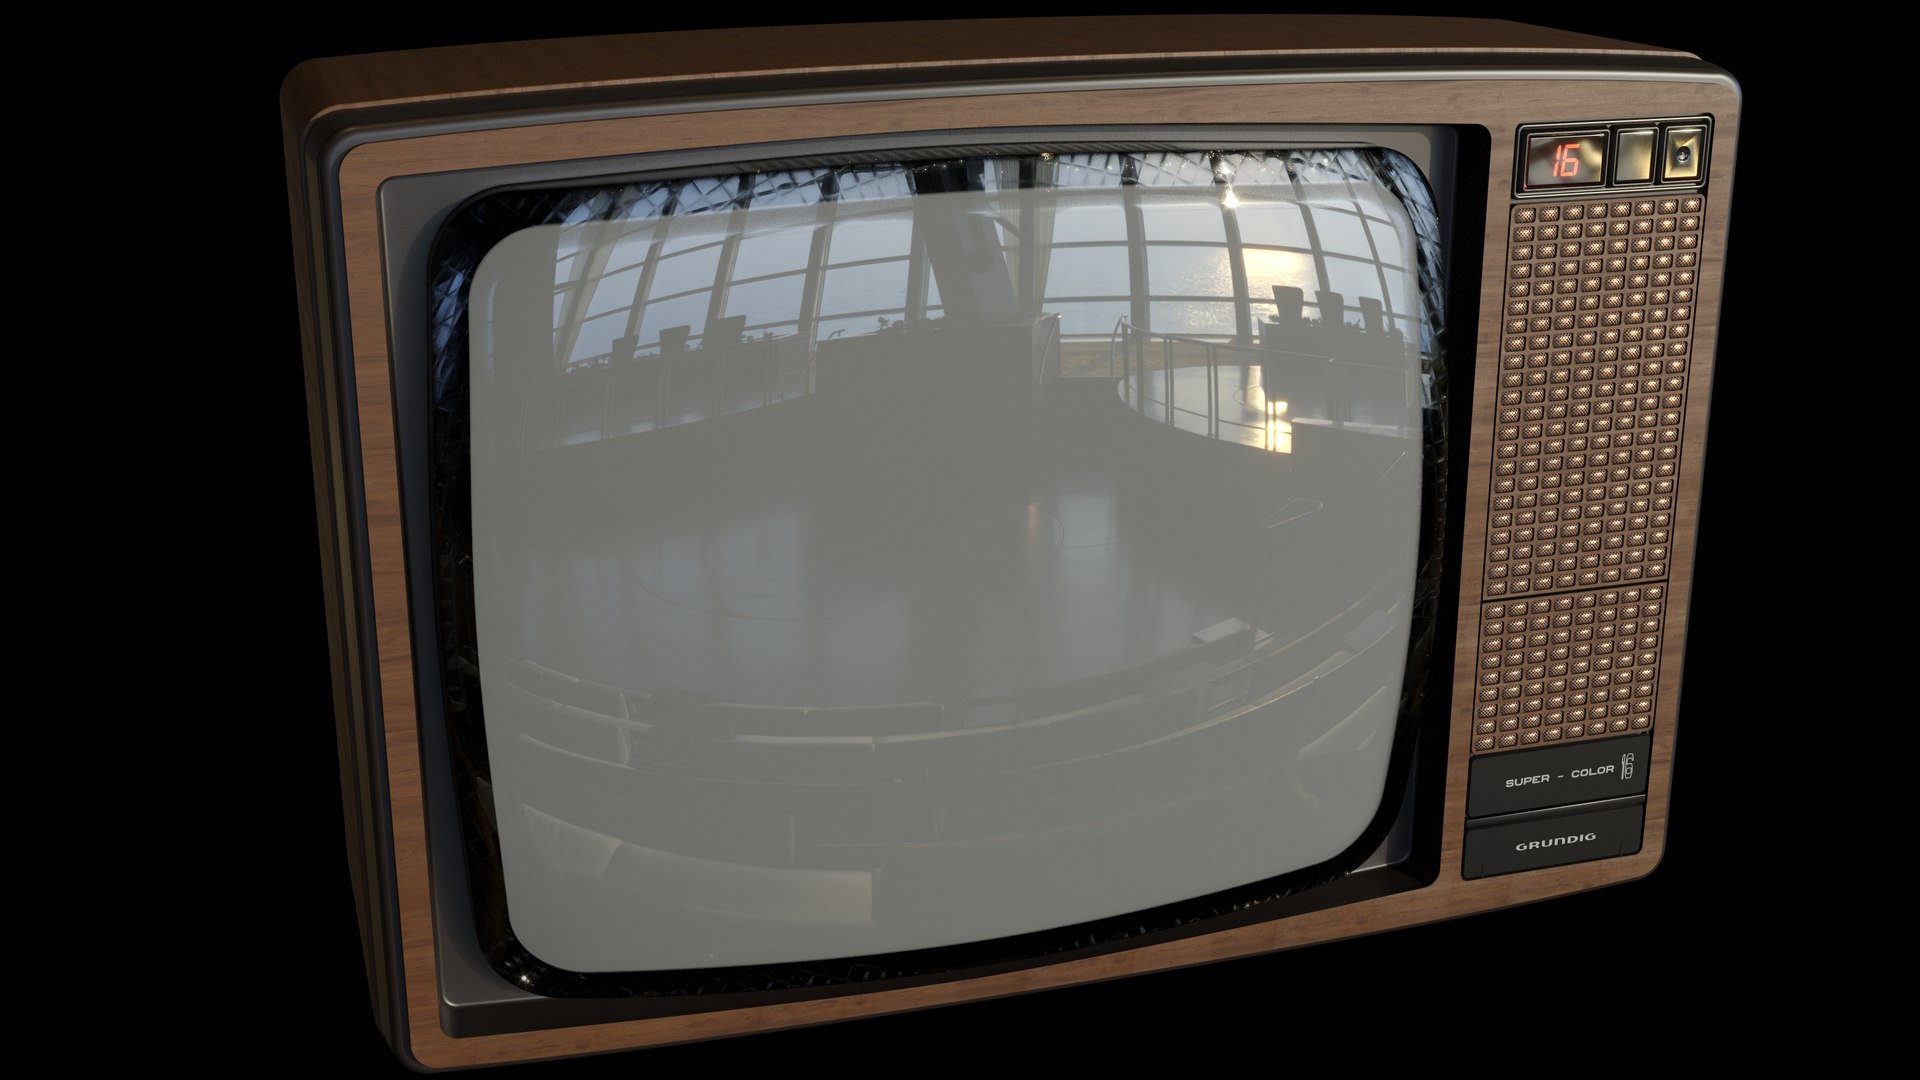 Vintage TV | 3D model